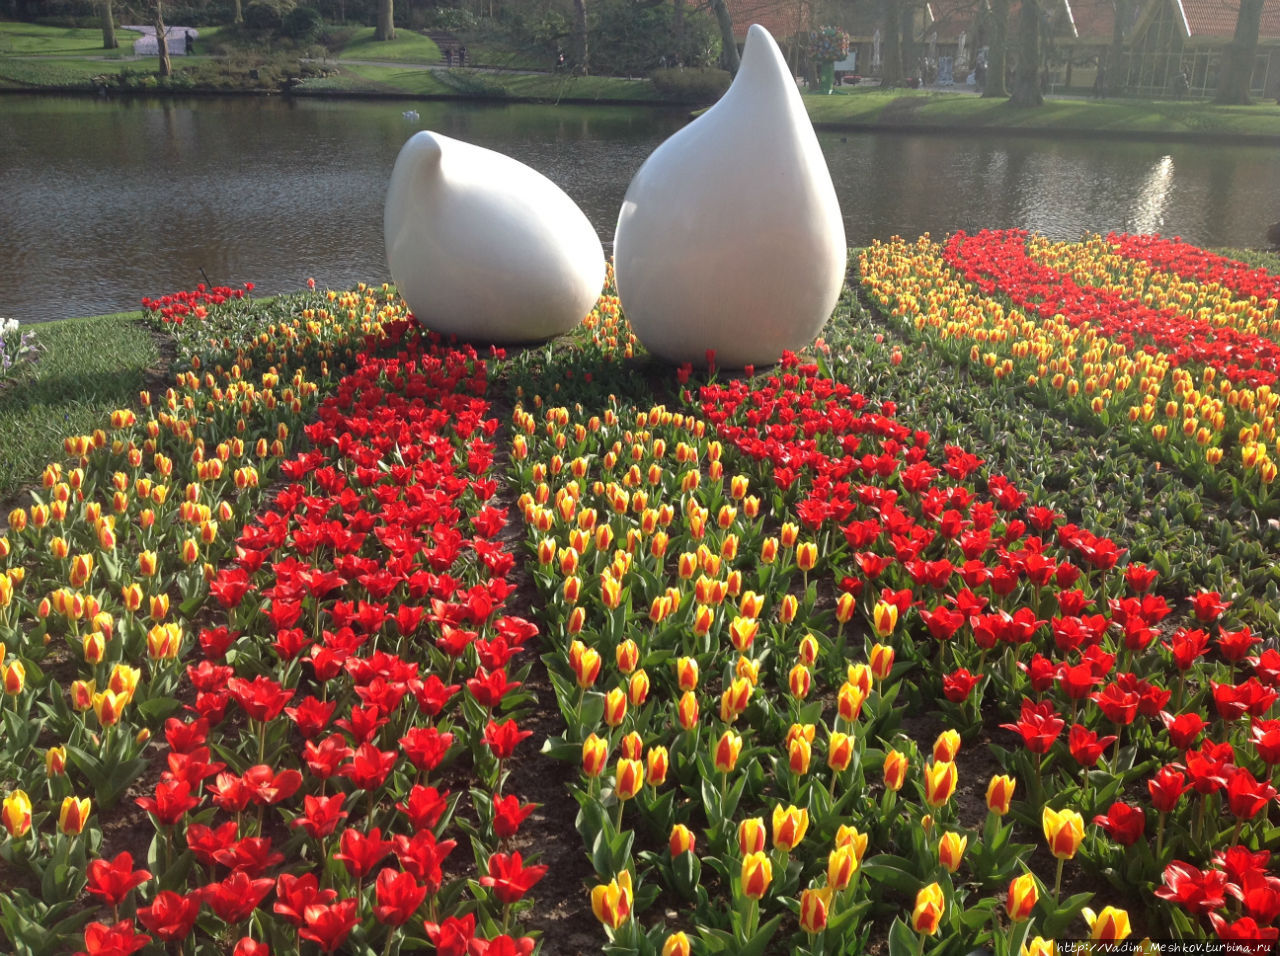 Сад Кёкенхоф, расположенный на 32 гектарах земли, знаменит на все Нидерланды своими цветами и большими тюльпановыми полянами. В парке посажено 4,5 миллиона тюльпанов 100 различных разновидностей. Кёкенхоф, Нидерланды